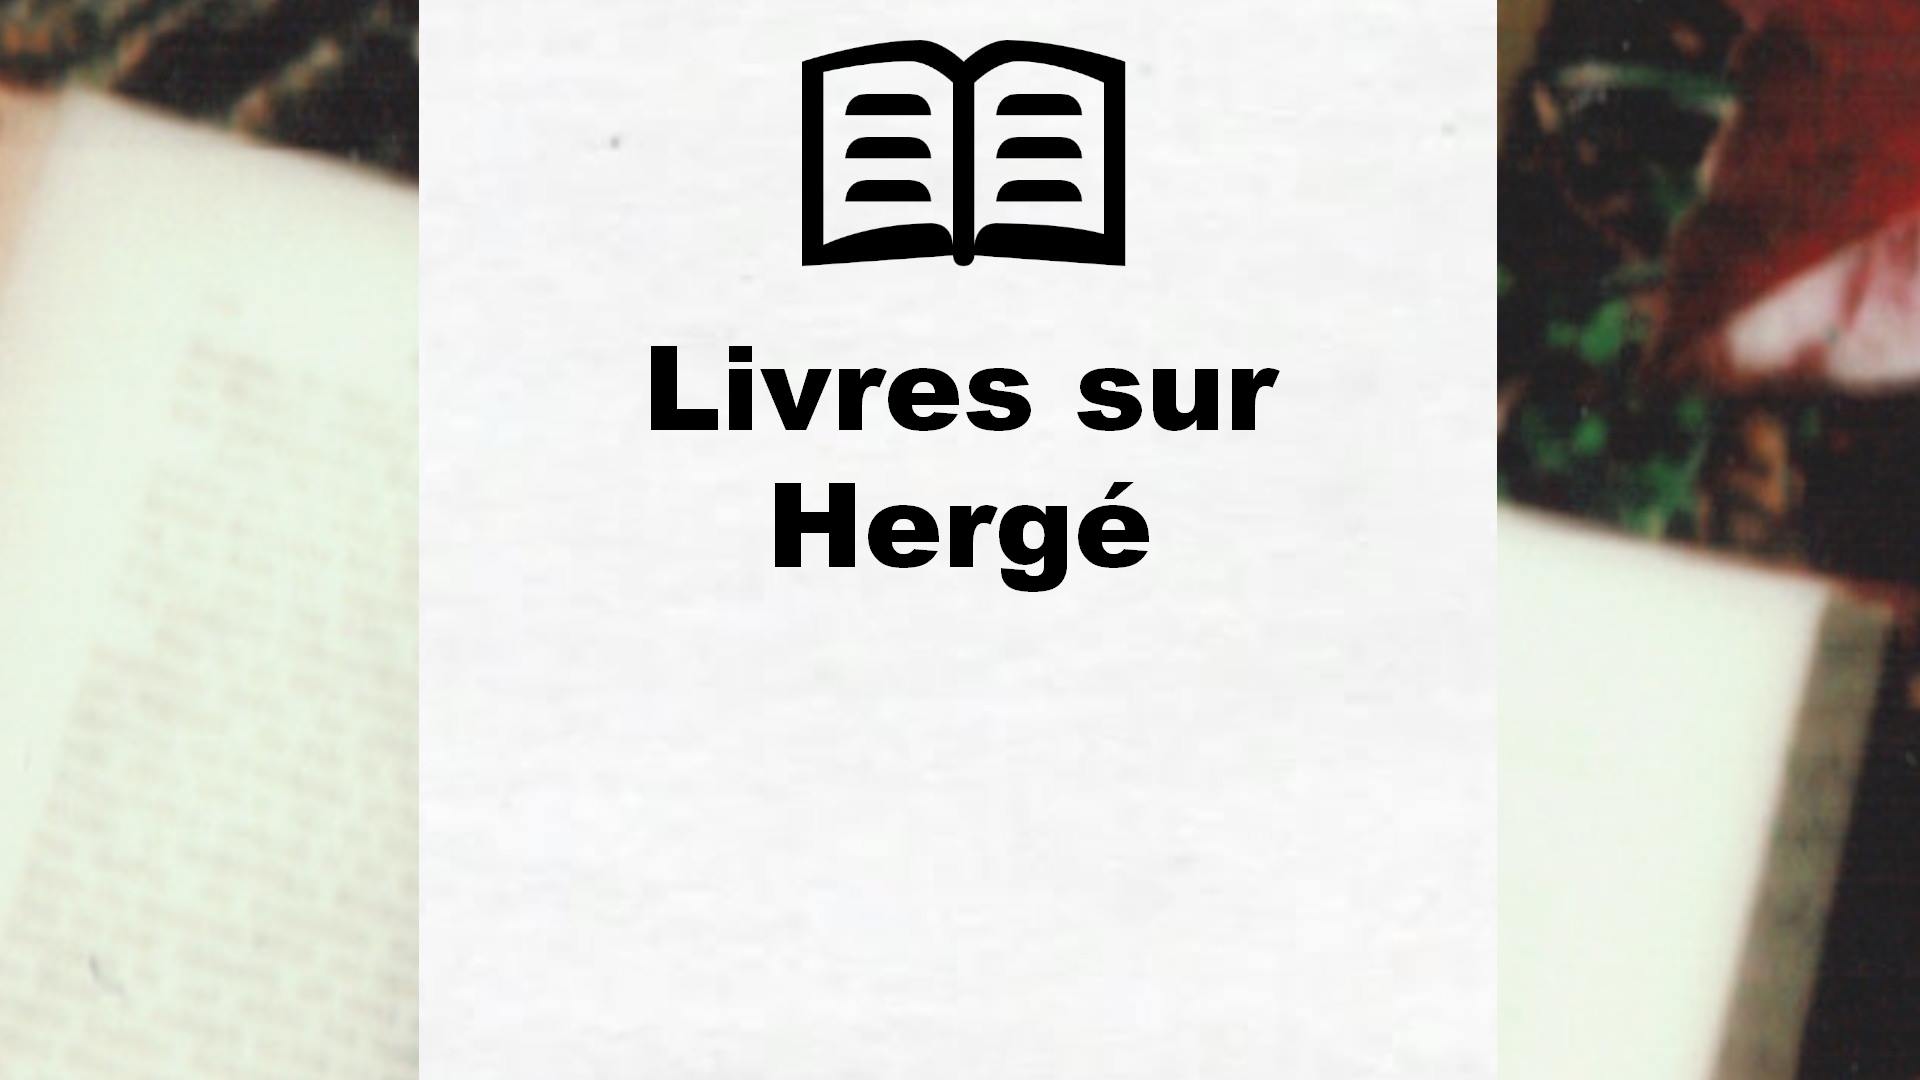 Livres sur Hergé